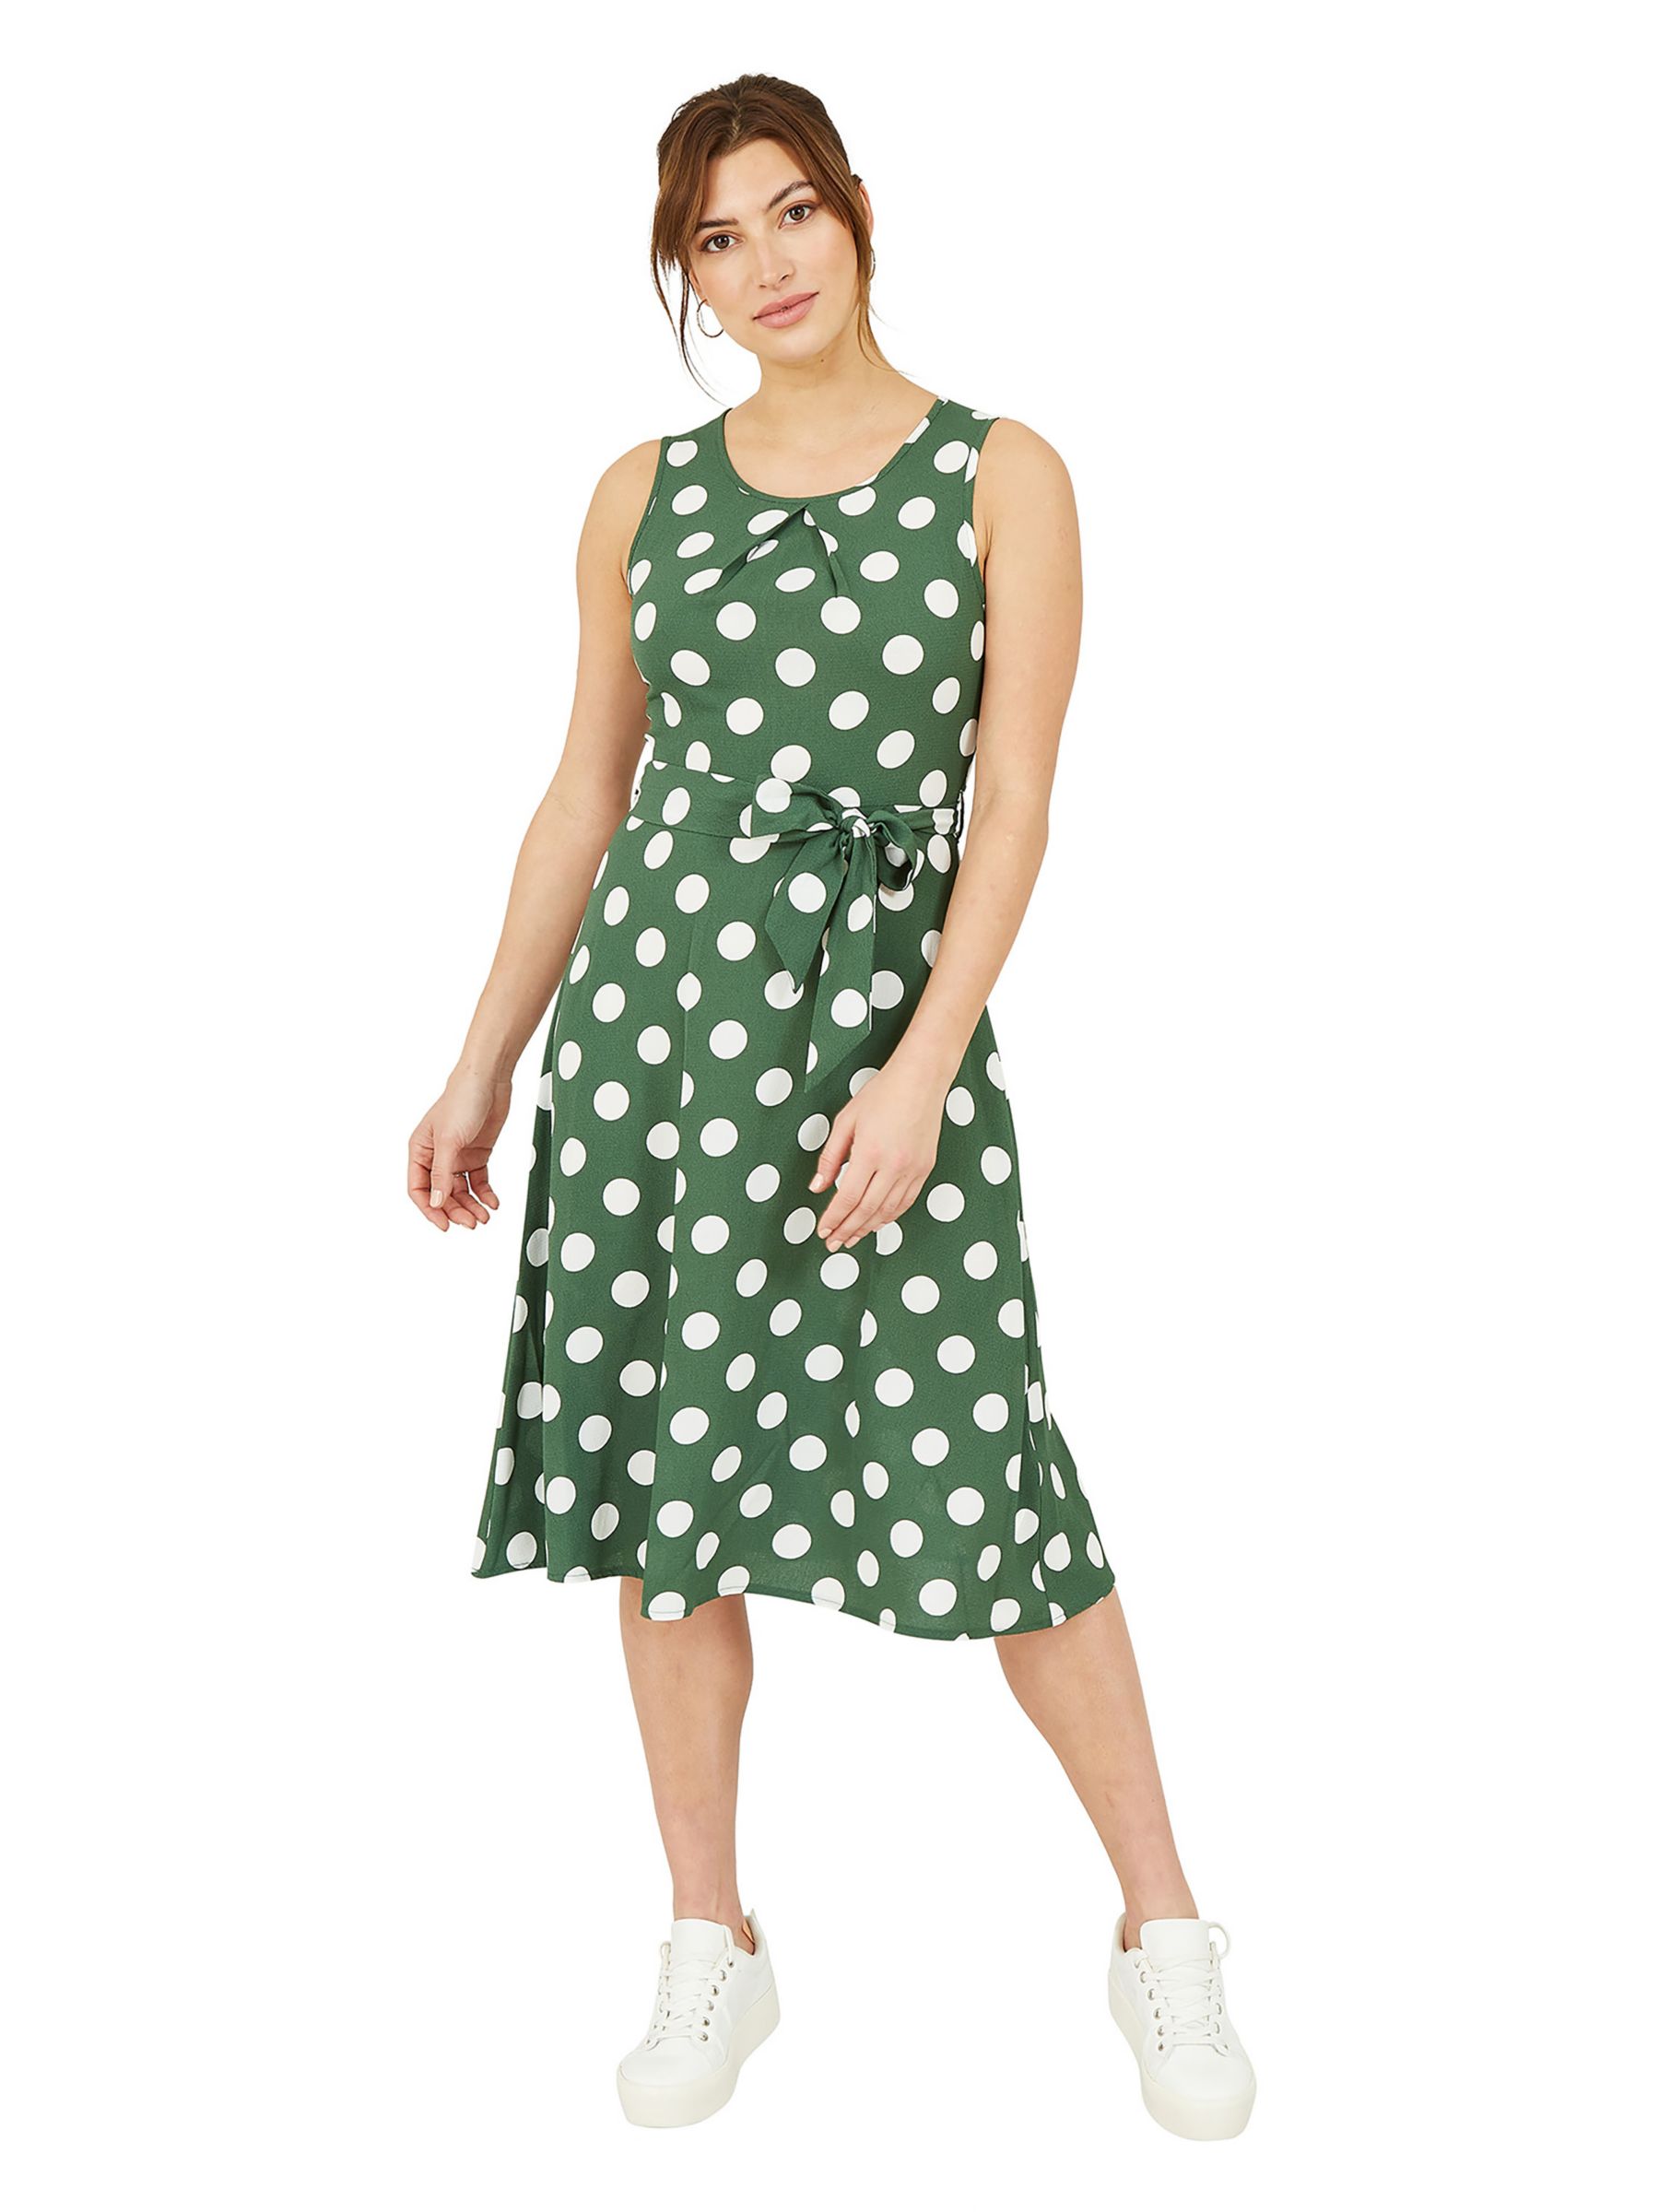 Mela London Polka Dot Sleeveless Skater Midi Dress, Dark Green/Multi, 8